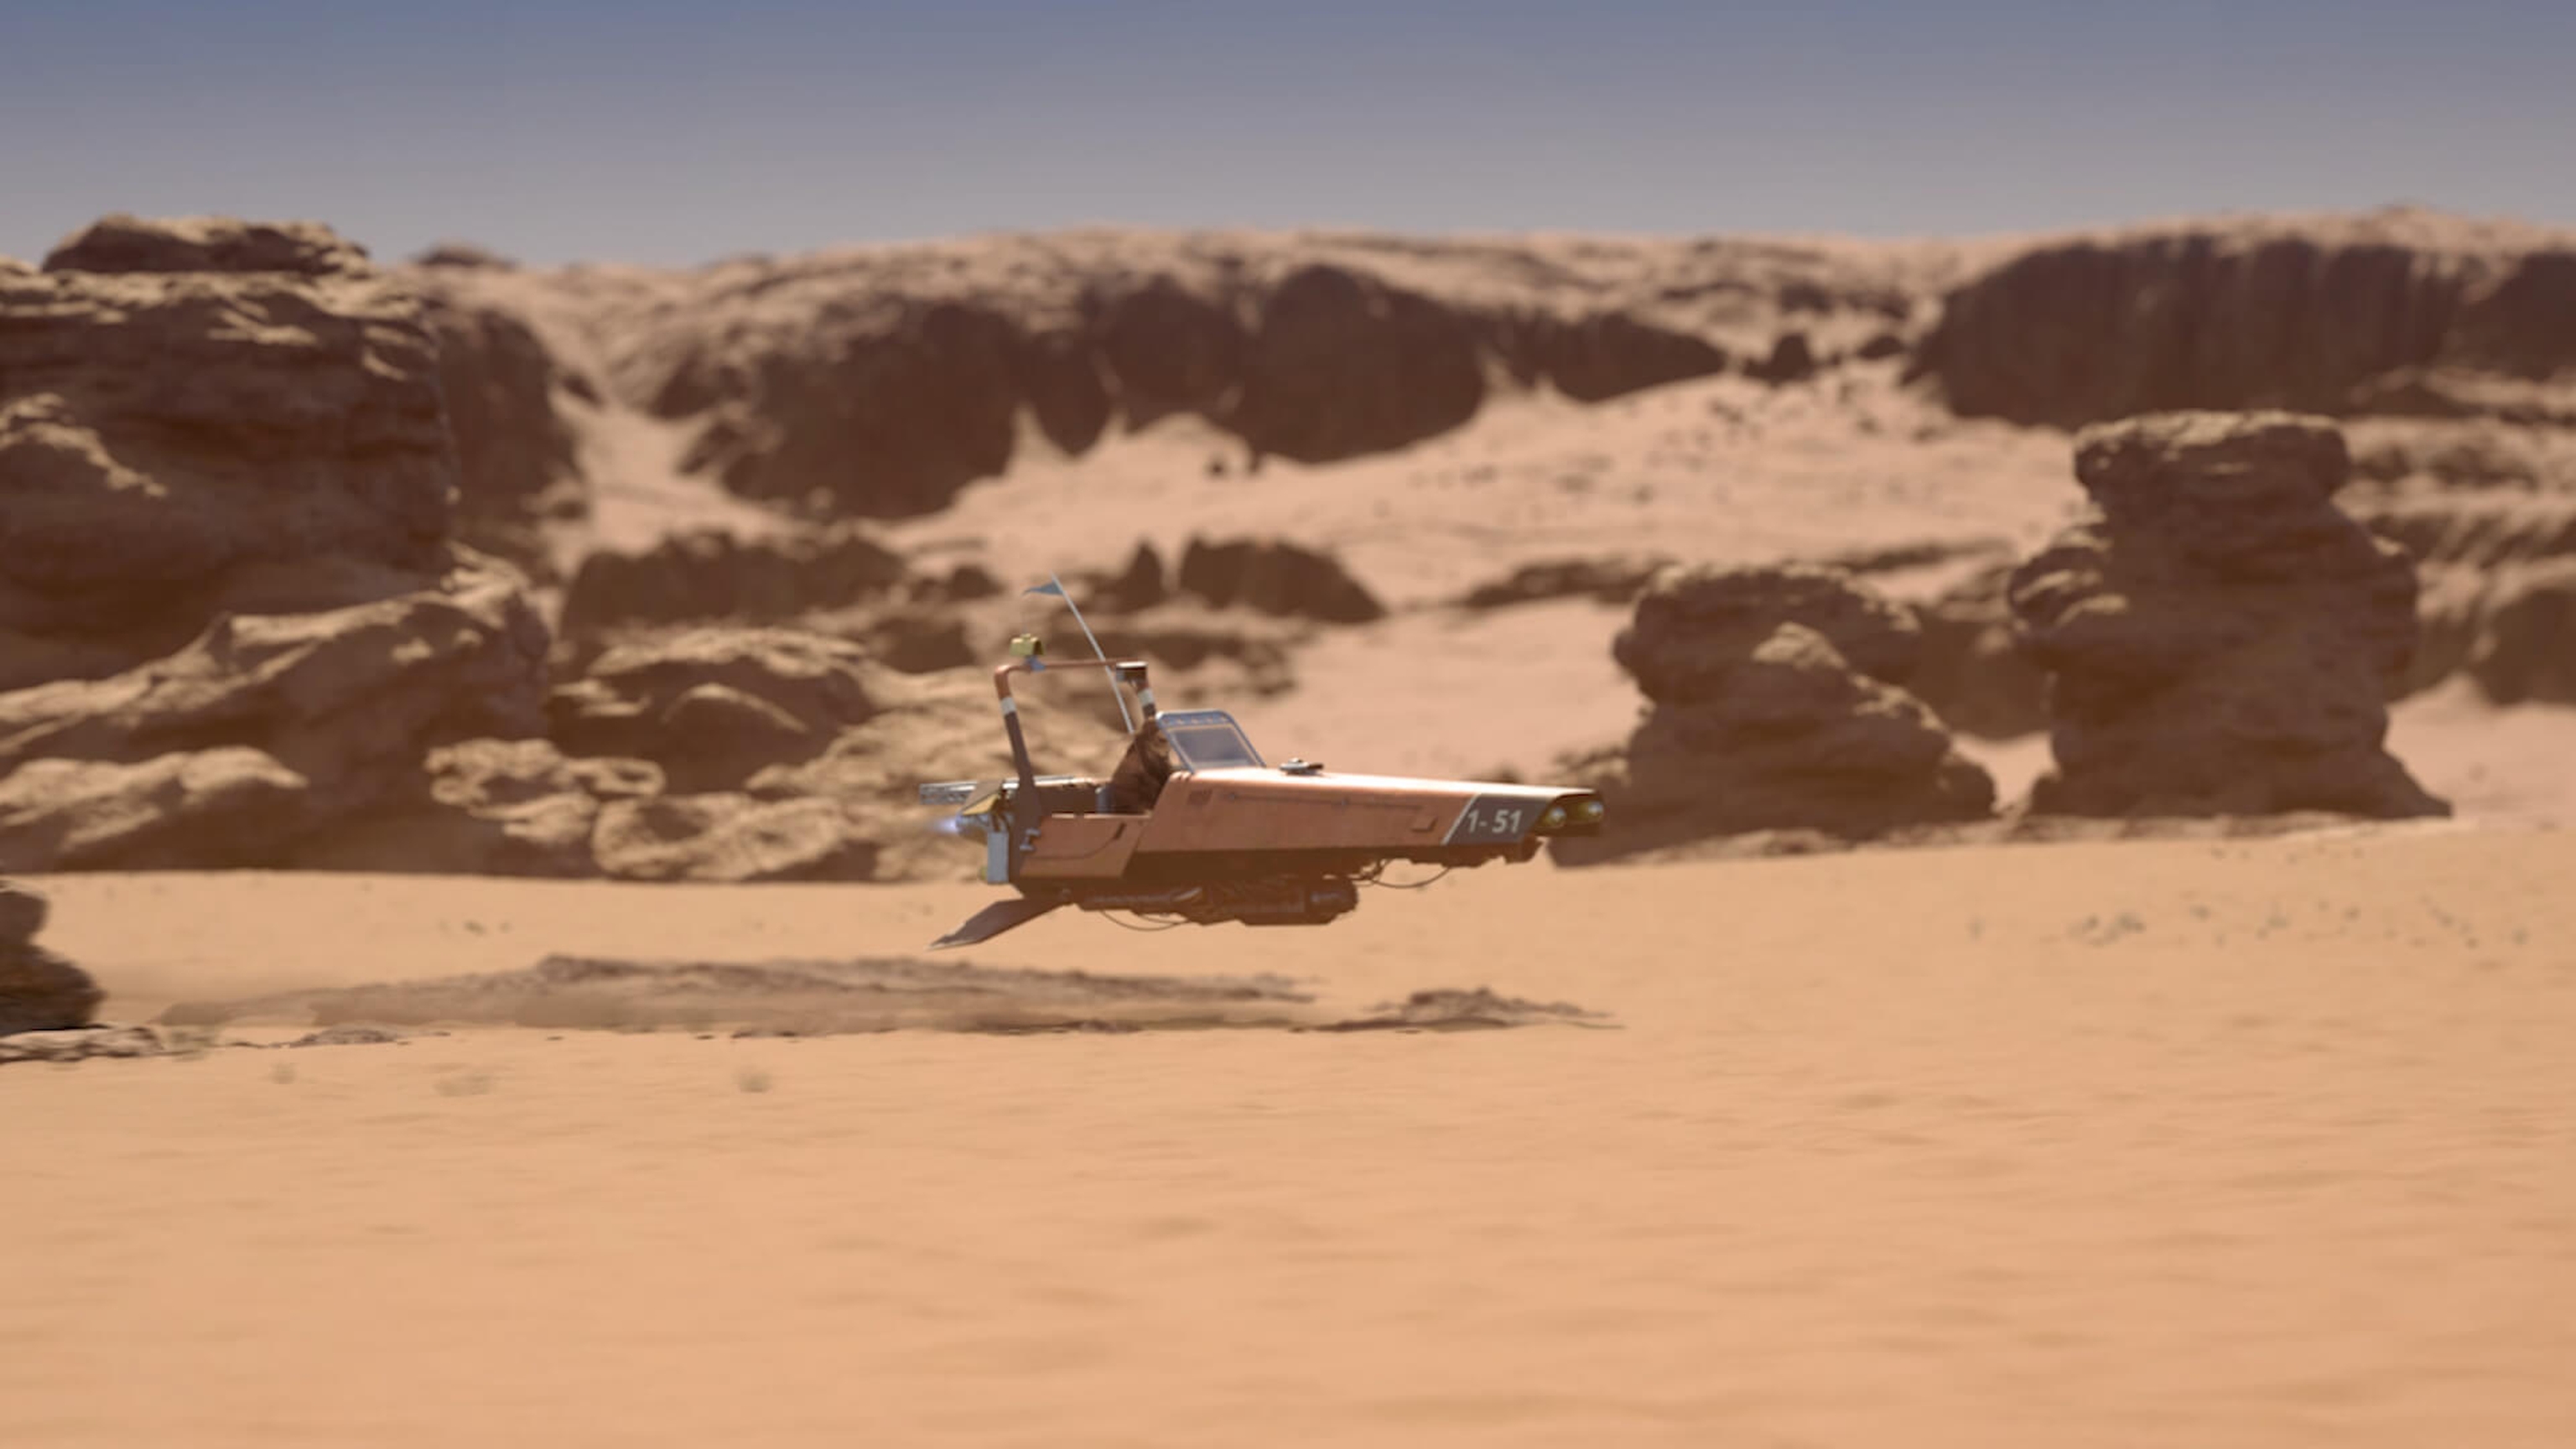 A spaceship in a desert canyon